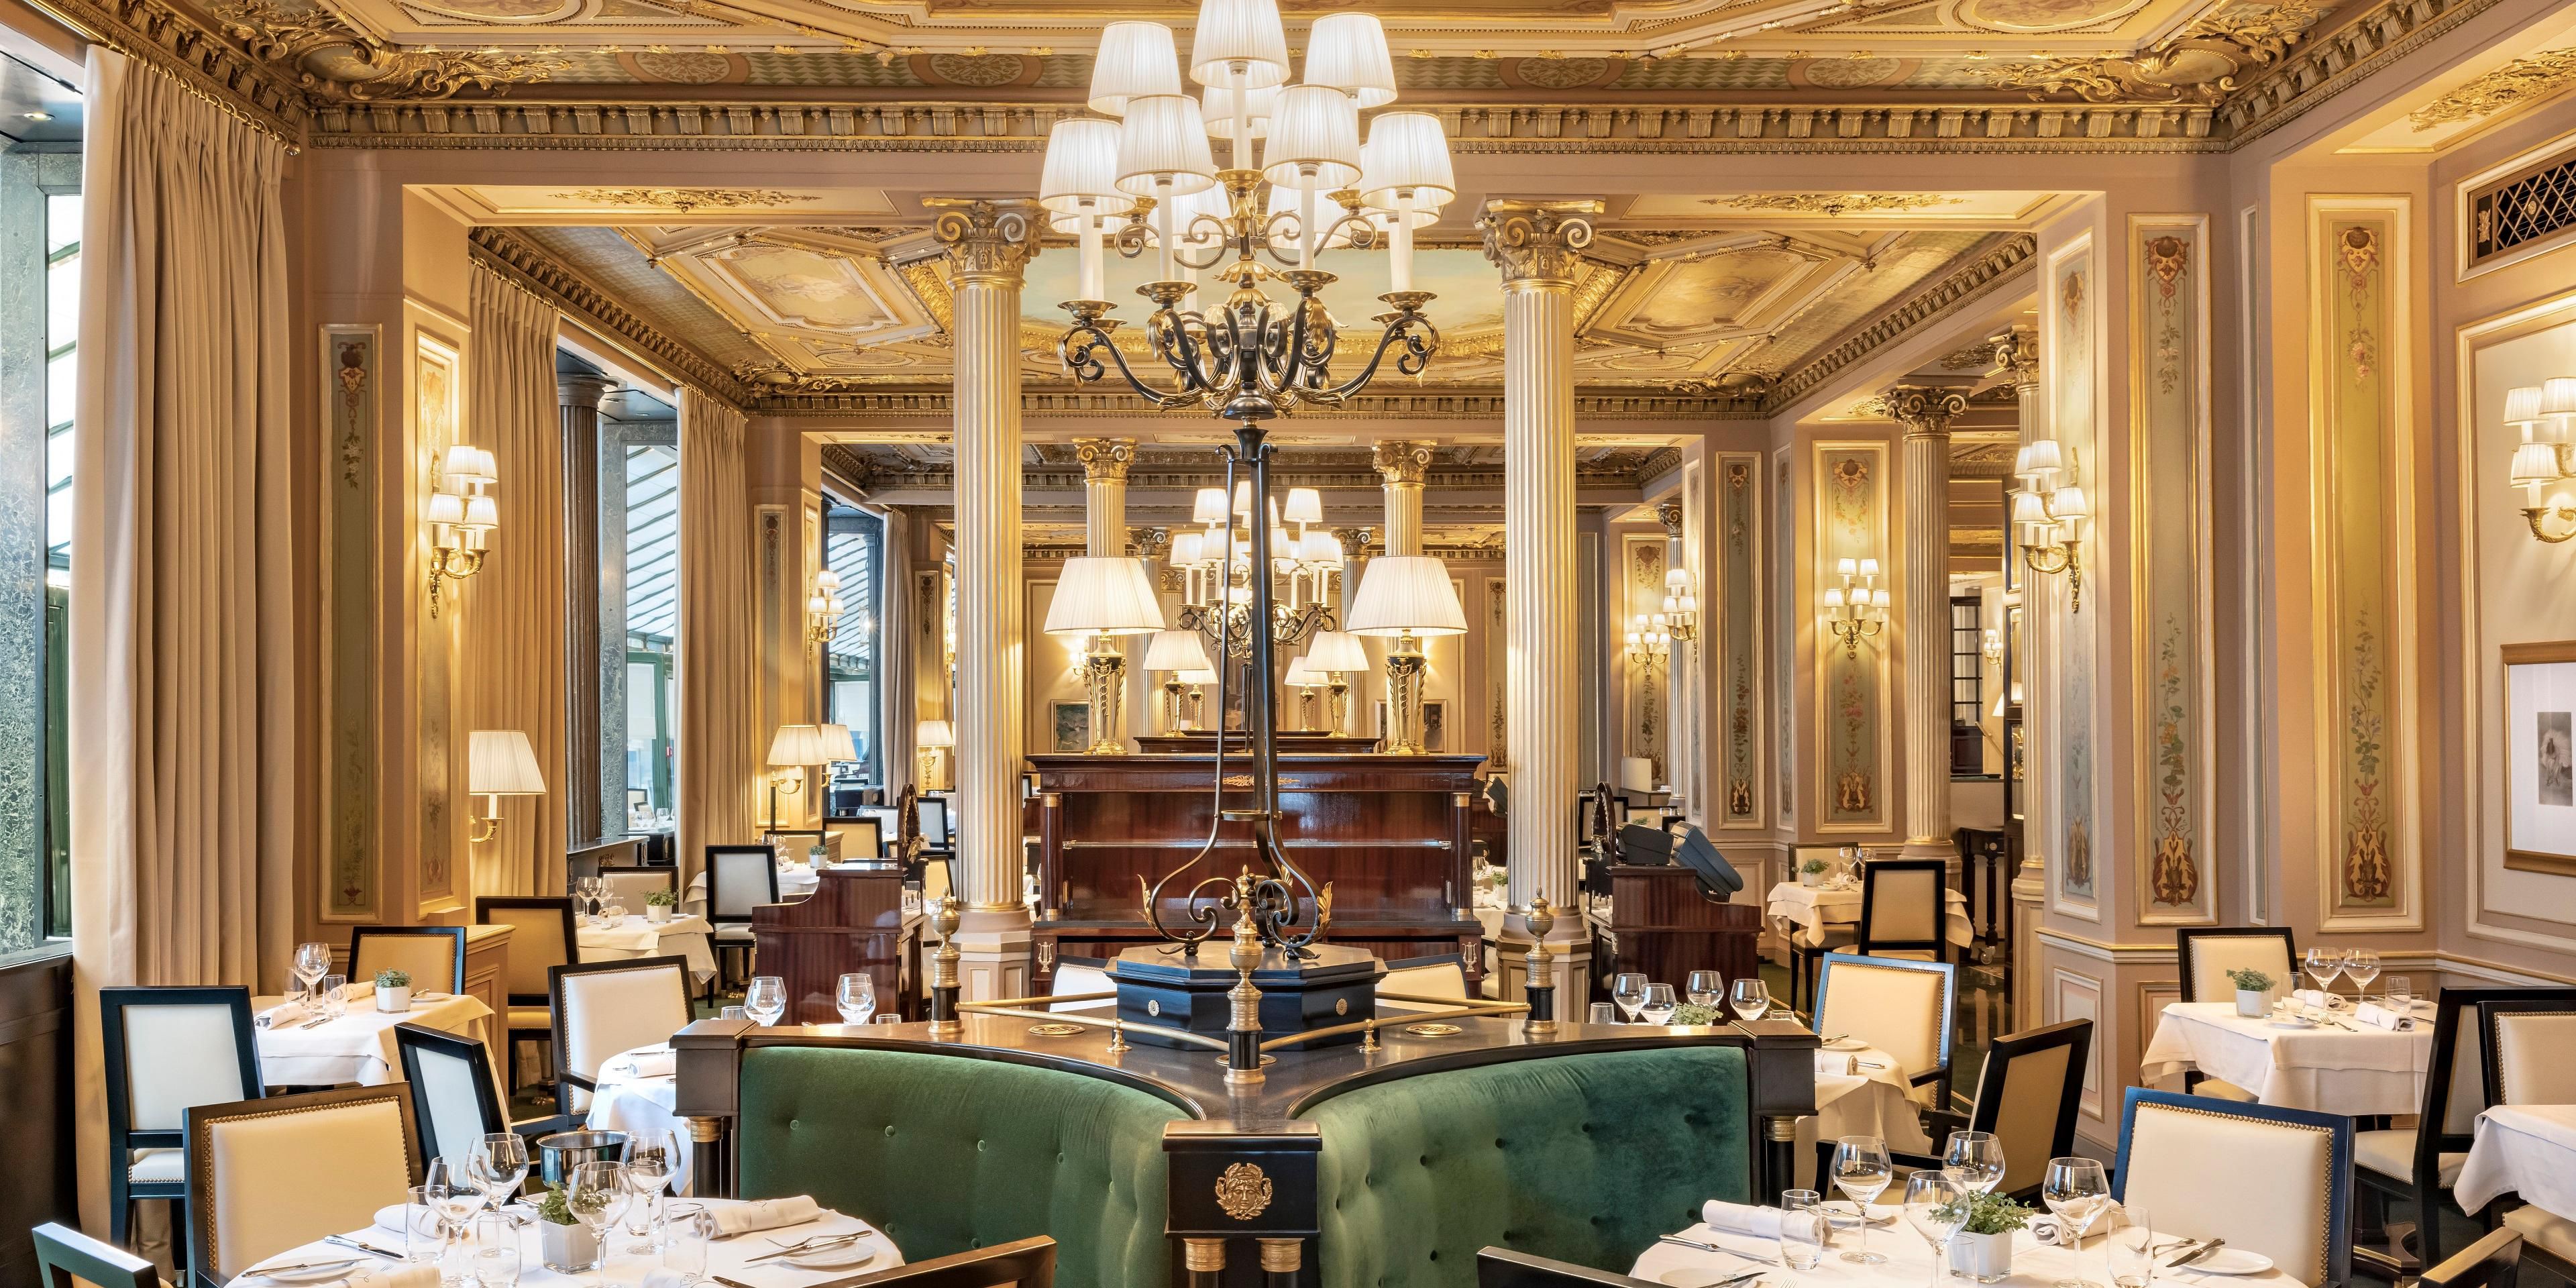 Scopri la cornice storica del Café de la Paix, leggenda della vita parigina dal 1862.
Lo chef Laurent André propone i classici della gastronomia francese per momenti eccezionali di fronte all'Opera Garnier.